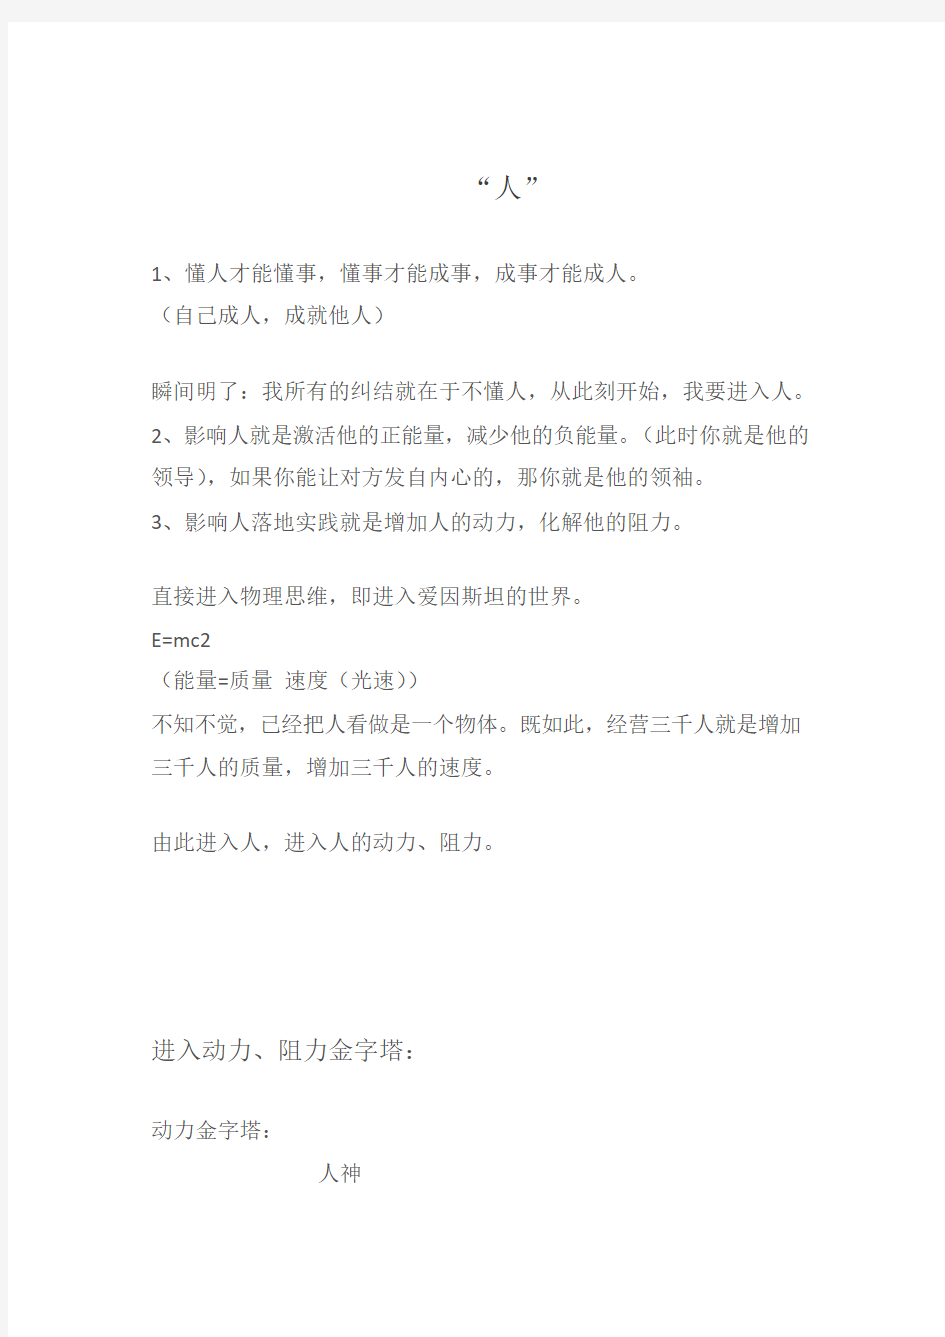 刘一秒2013年万人影响智慧笔记2013.11.24-26广州